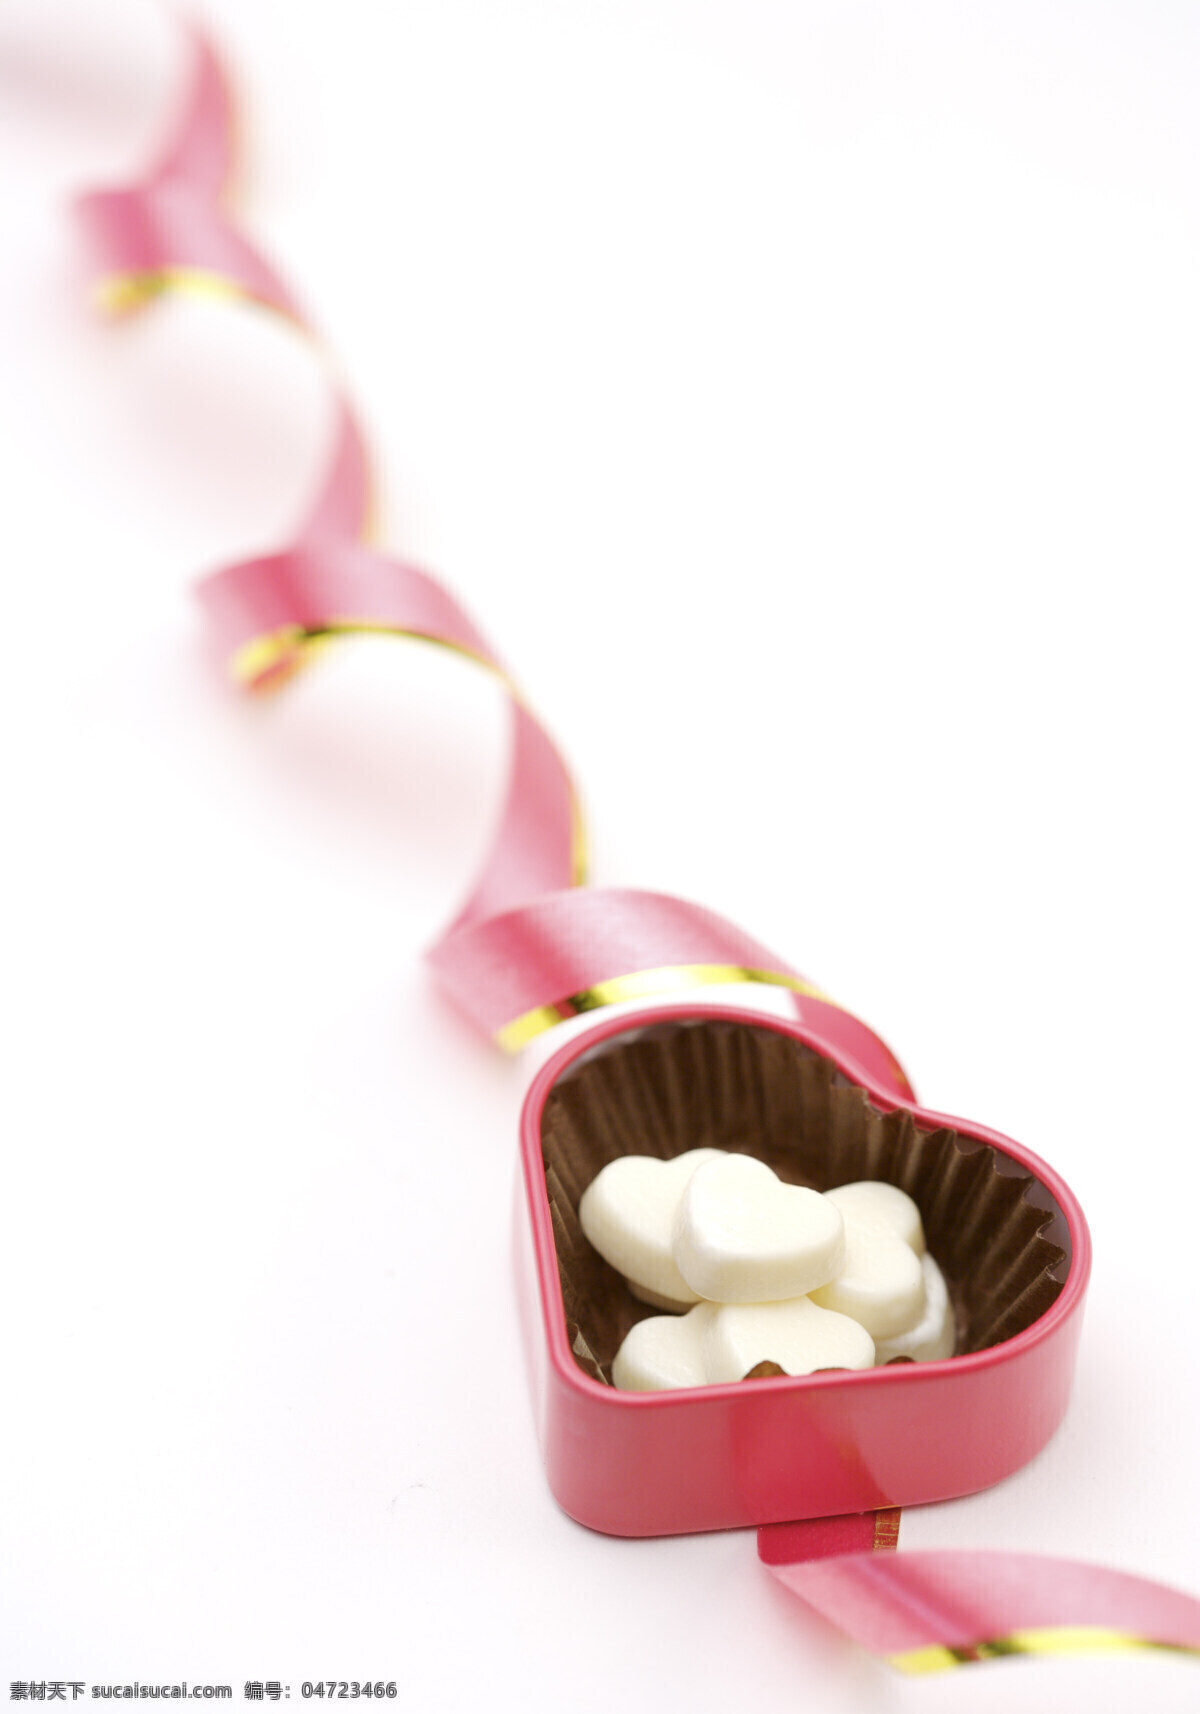 餐饮美食 粉丝带 巧克力 巧克力包装 糖果 心形巧克力 牛奶 牛奶巧克力 巧克力糖果 白色巧克力 甜蜜巧克力 糖果盒 浪漫礼品 超市巧克力 巧克力批发 矢量图 其他矢量图